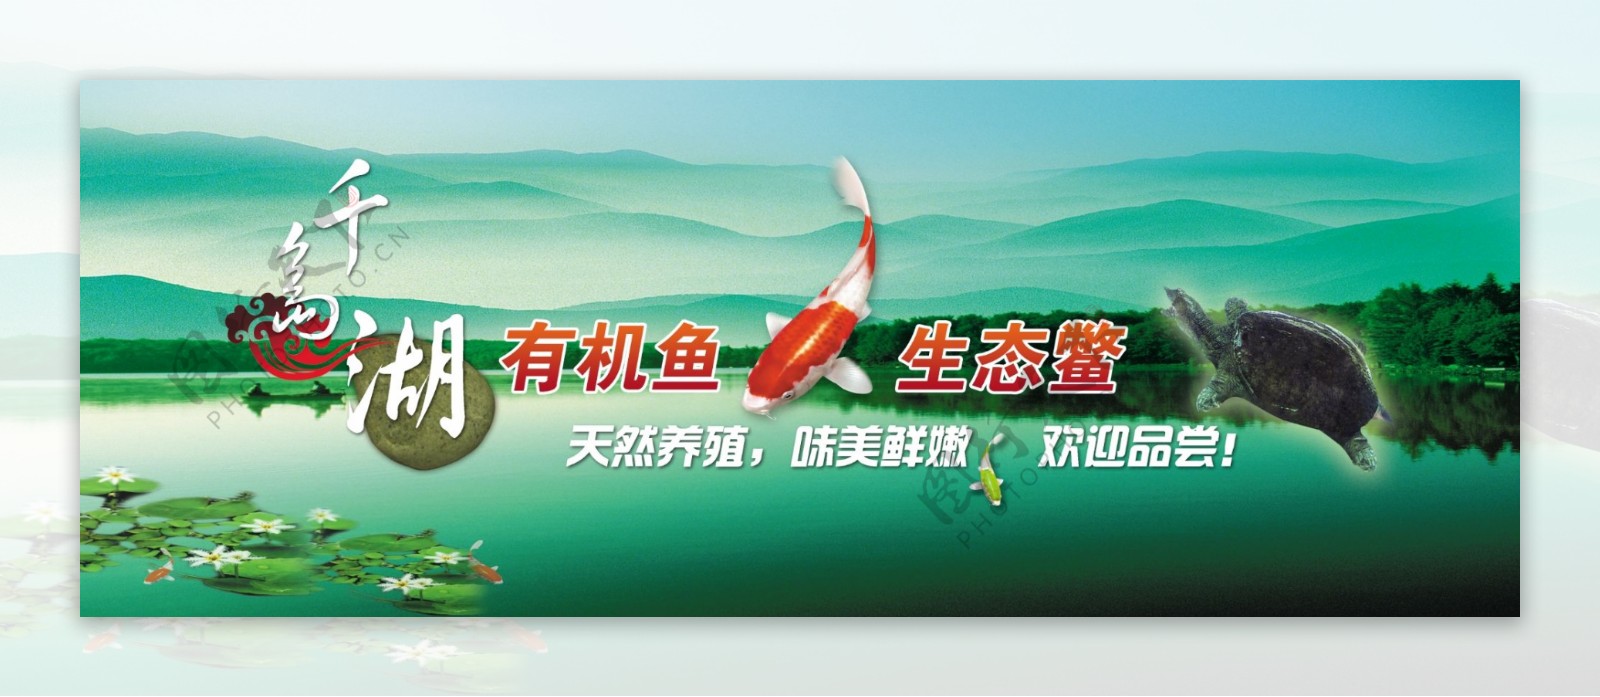 龙腾广告平面广告PSD分层素材源文件食品海鲜千岛湖鱼鳖